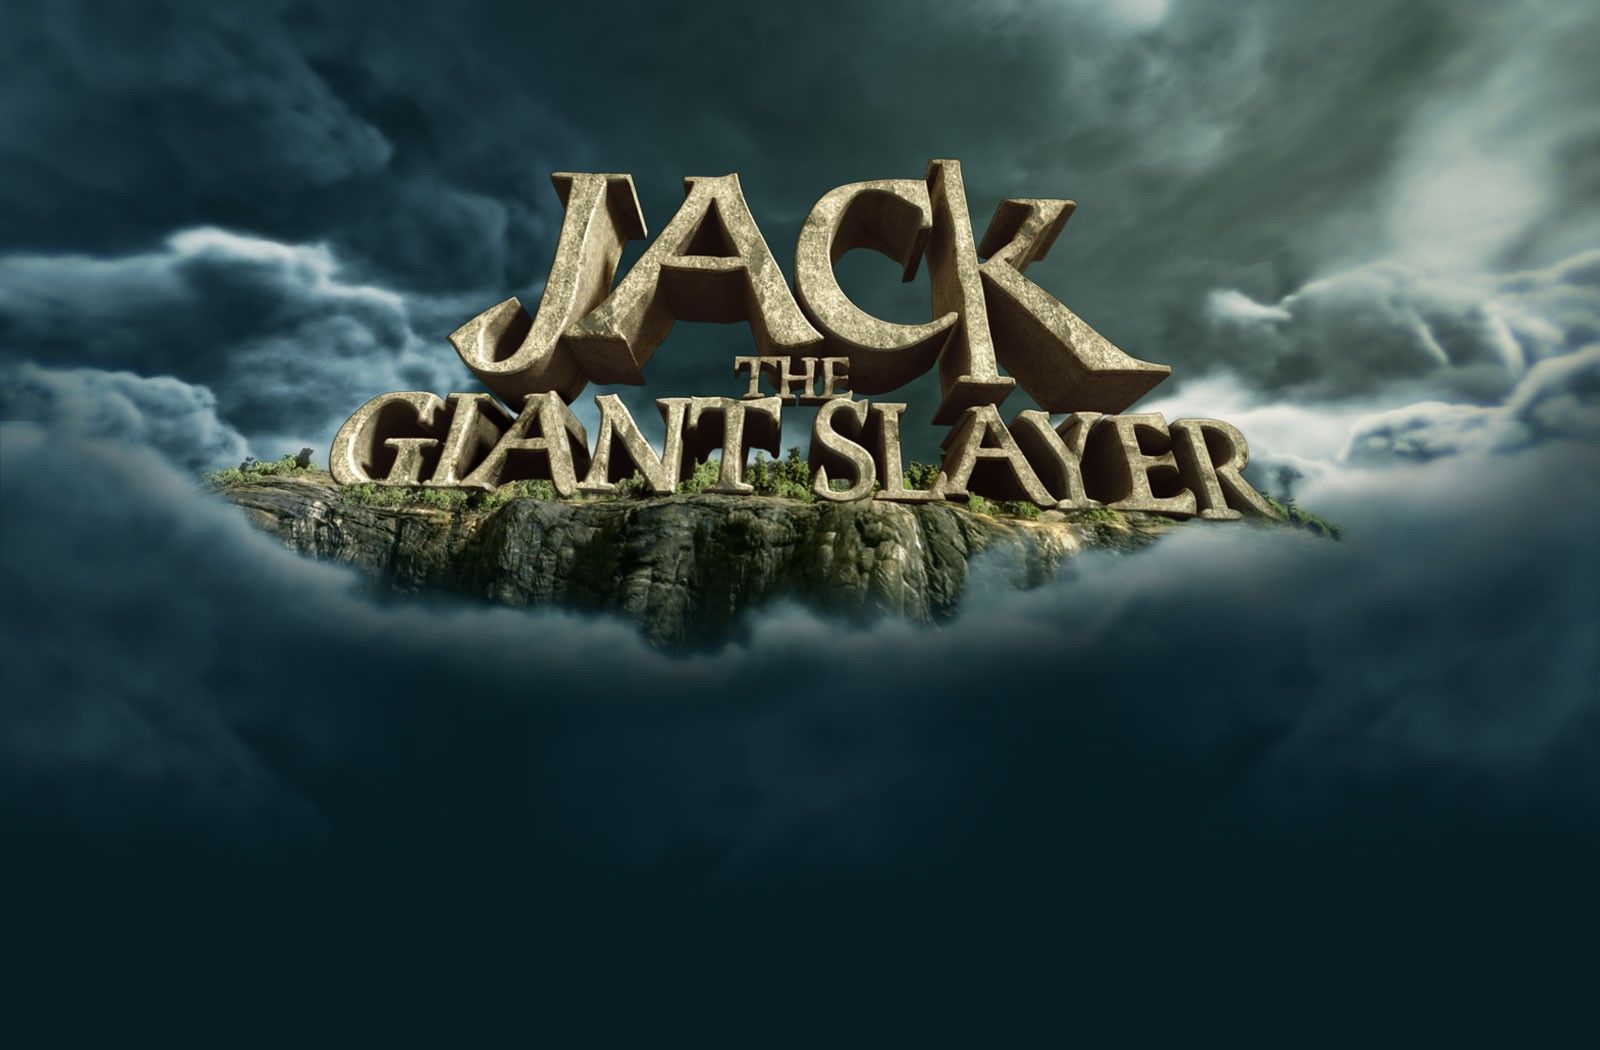 Джек – покоритель великанов